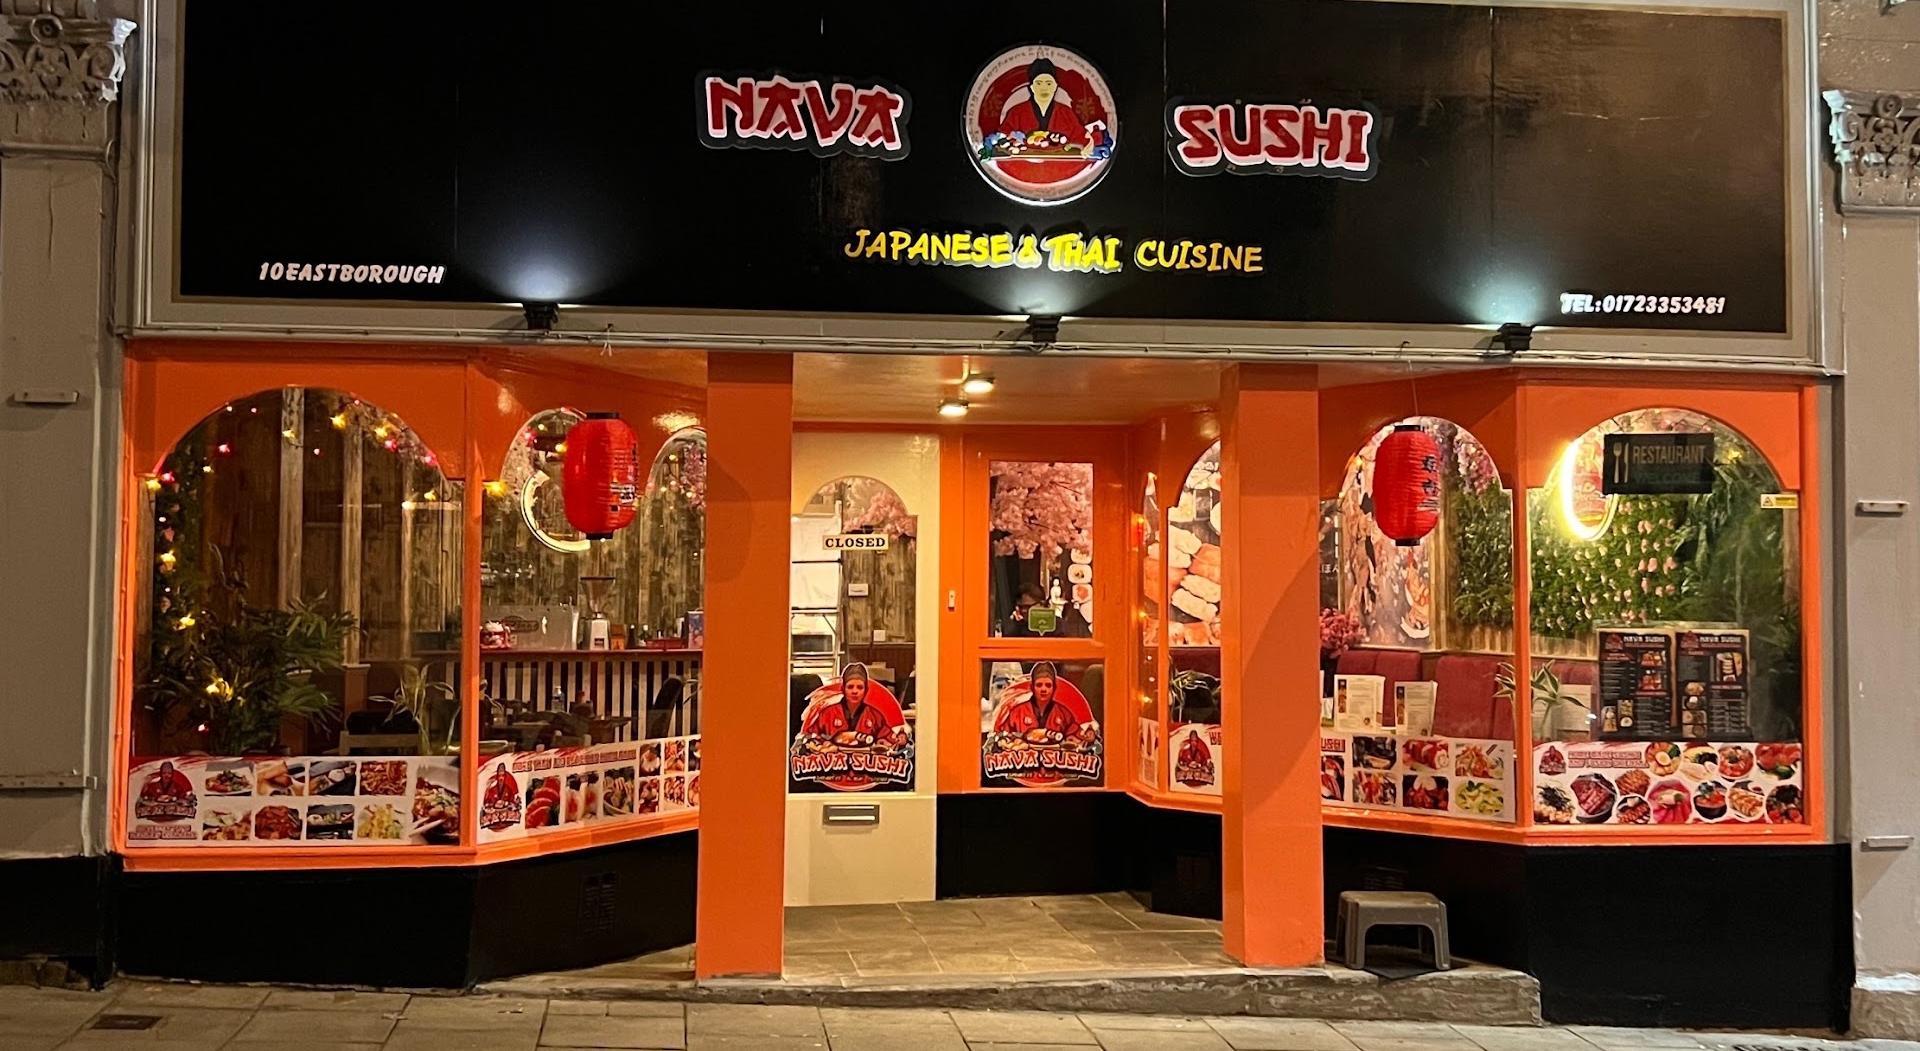 ناوا سوشی غذاهای ژاپنی و تایلندی